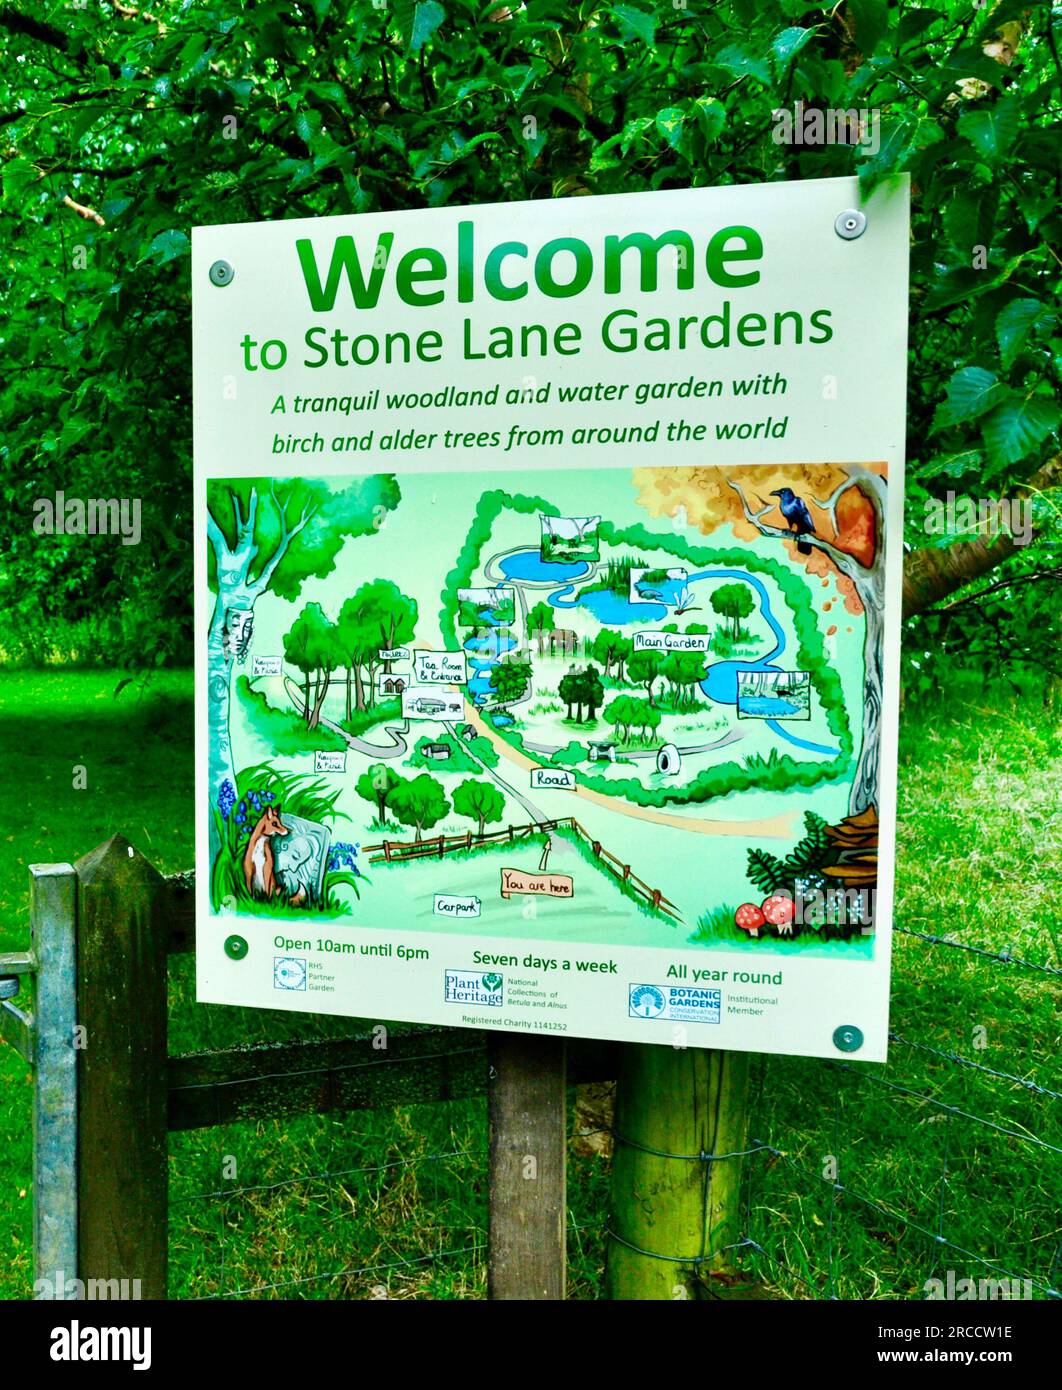 Stone Lane Gardens, Stockfoto